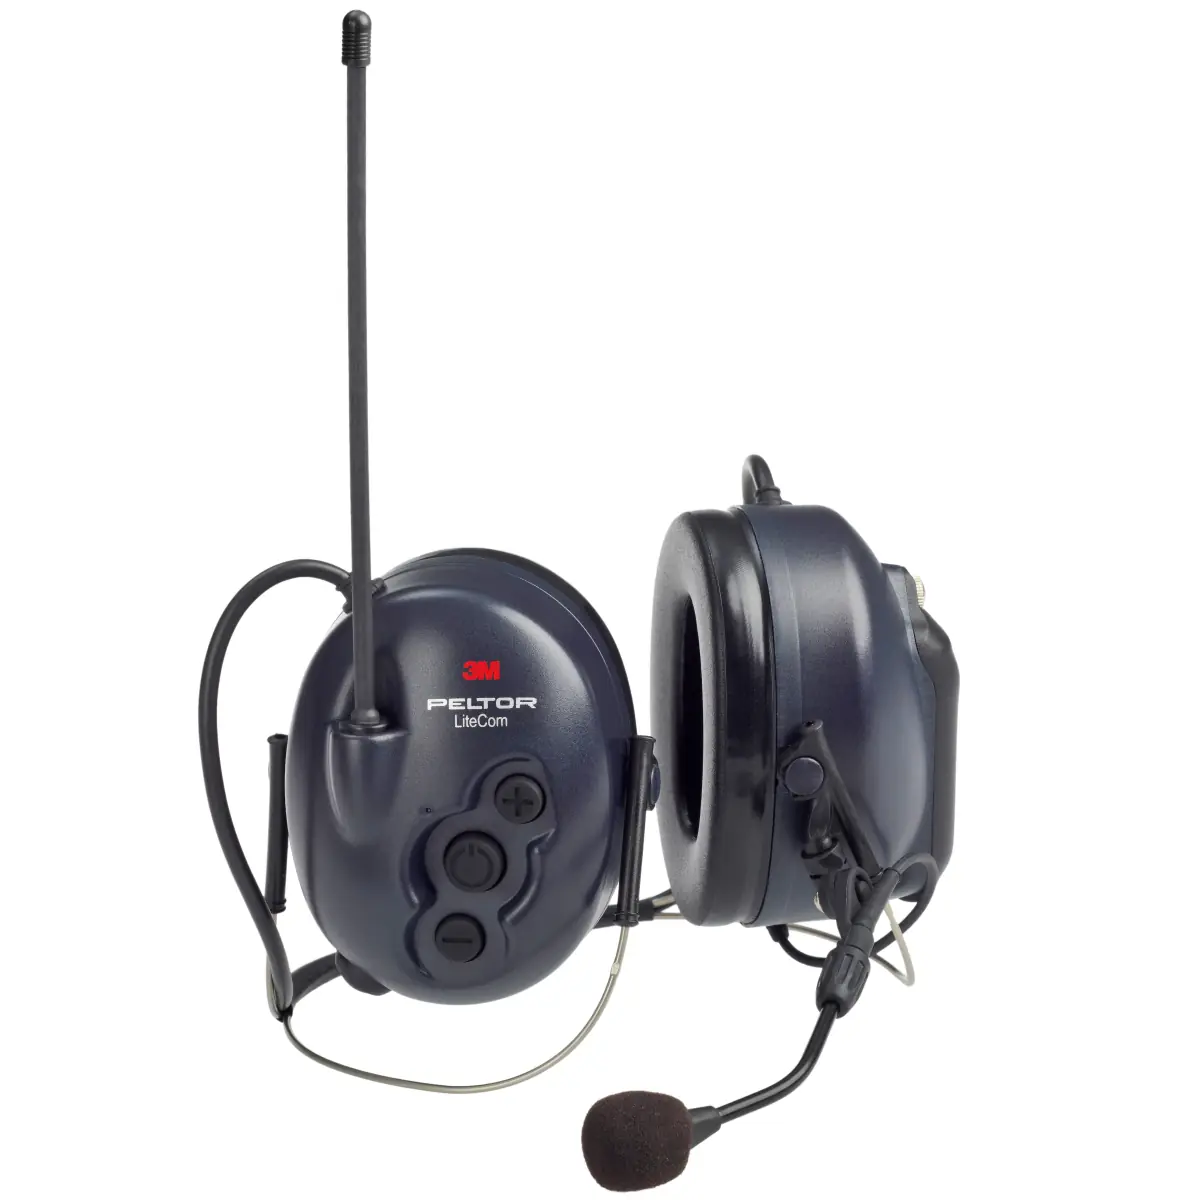 Casque anti-bruit Peltor avec radio numérique DAB + FM et bandeau